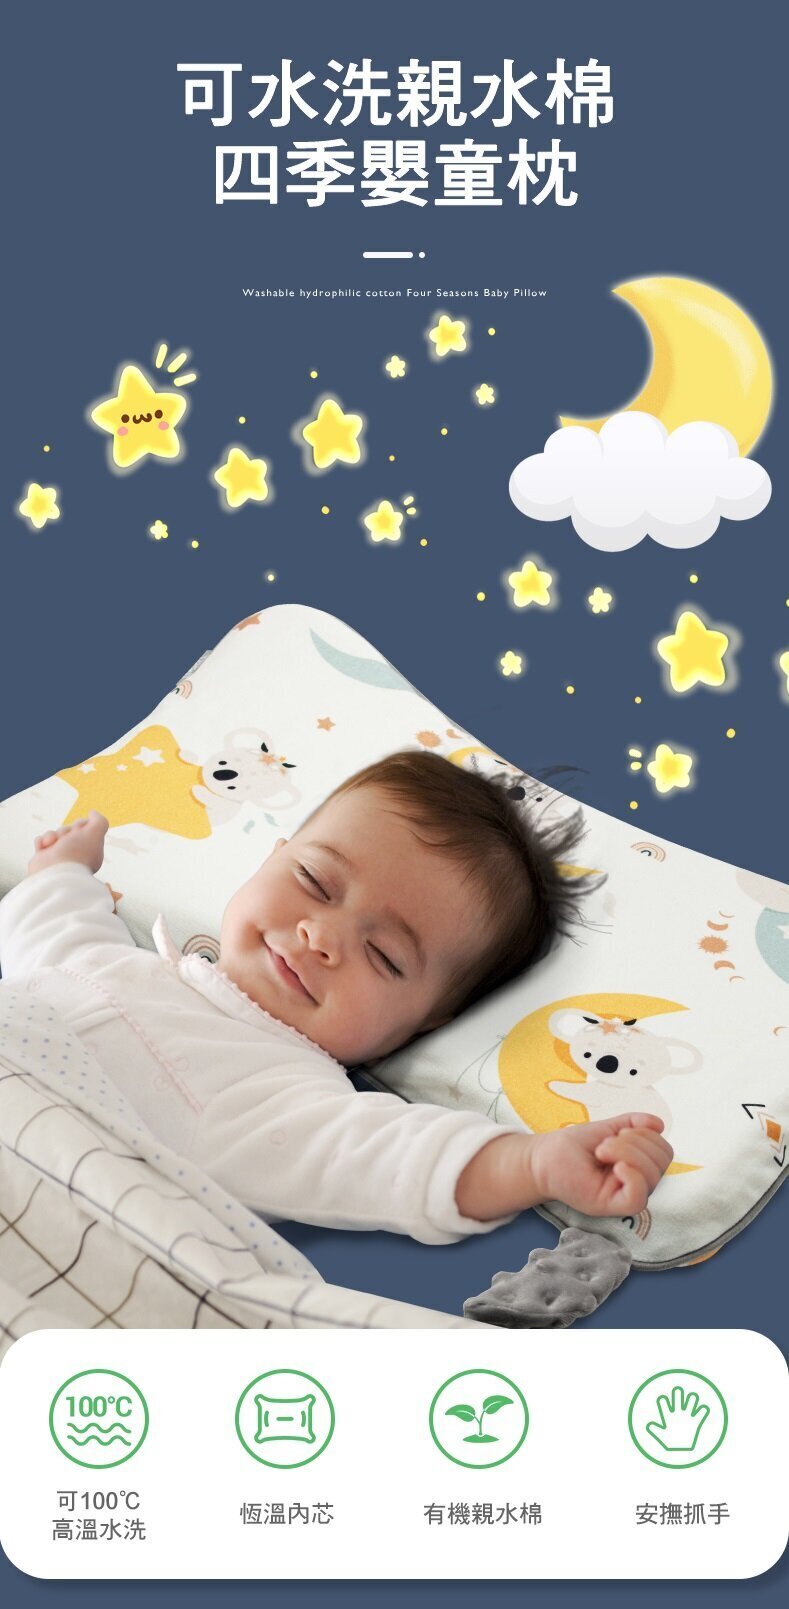 b&h 親水棉幼童塑型枕頭連枕套 (6個月 ~ 7歲)